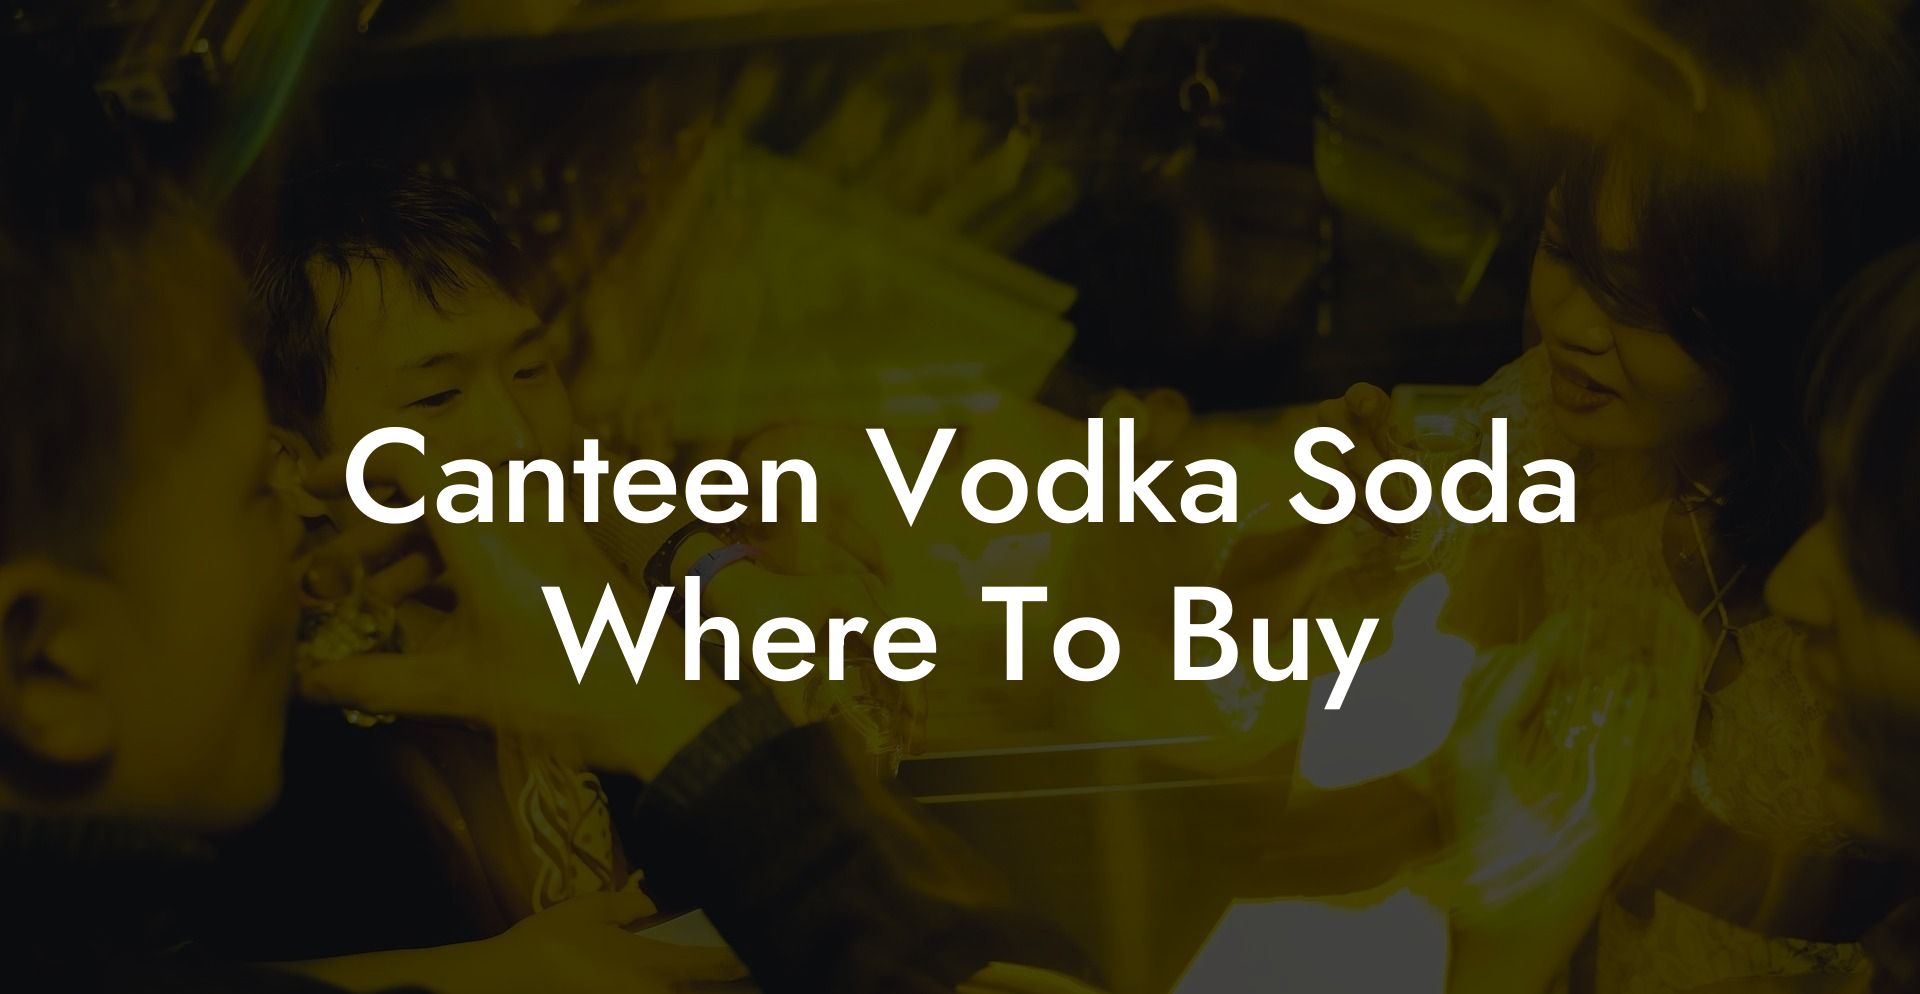 Canteen Vodka Soda Where To Buy